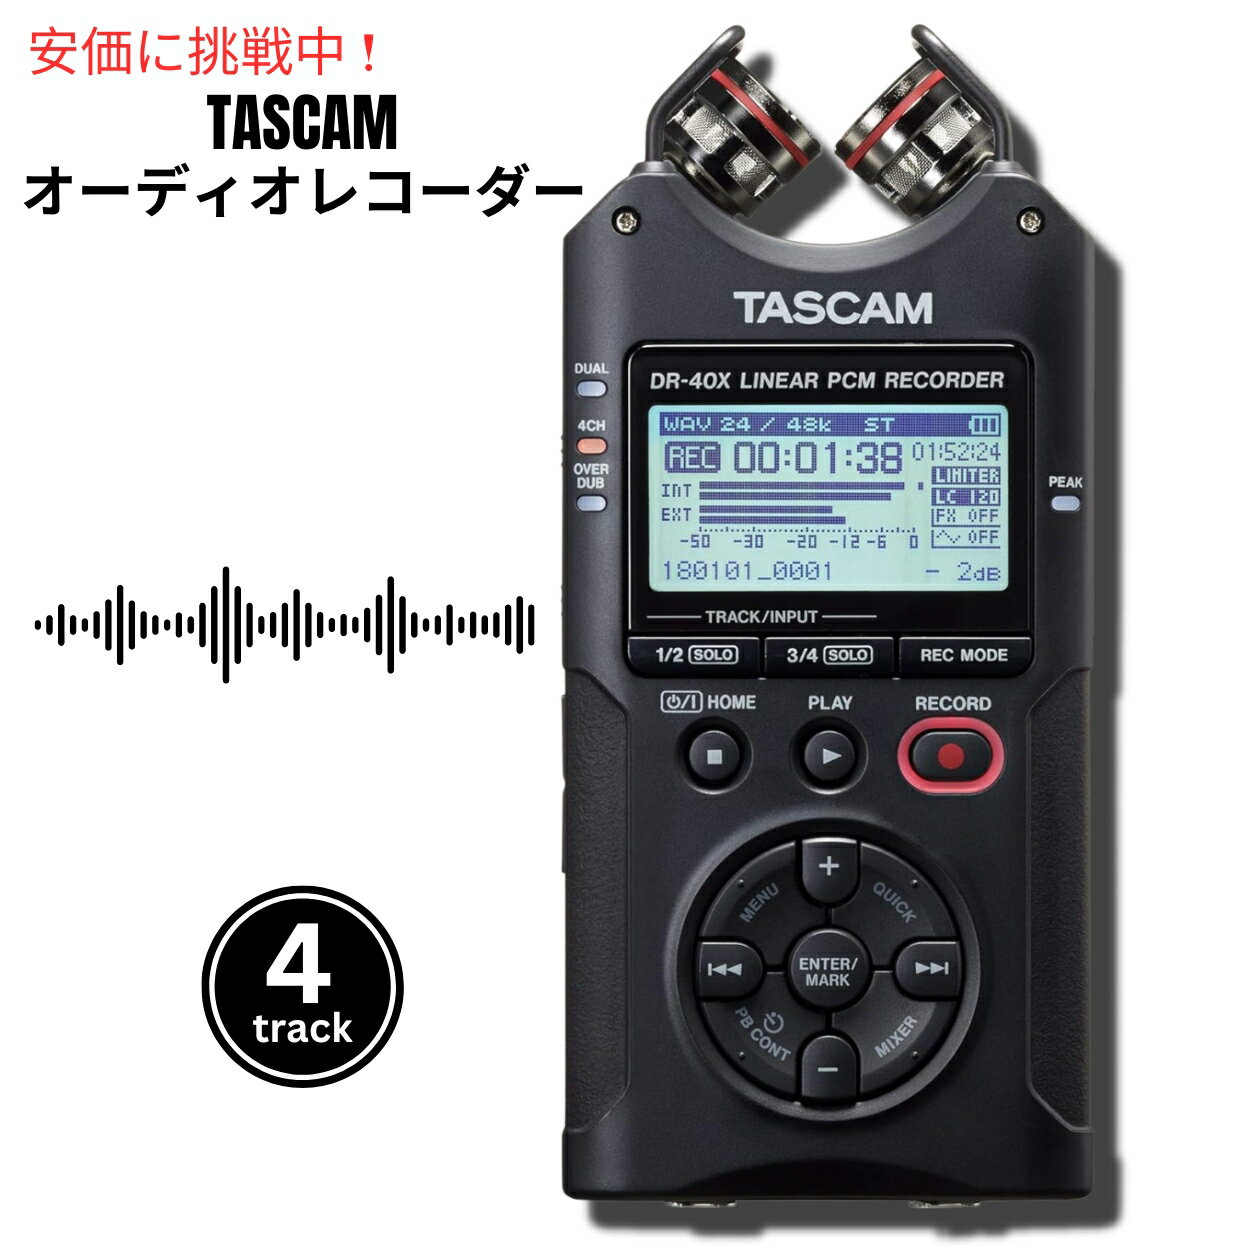 【最大2,000円クーポン5月27日1:59まで】Tascam DR-40X タスカム4トラックサウンドレコーダー Four Track Sound Recorder USB サウンドインタフェース Sound Interface